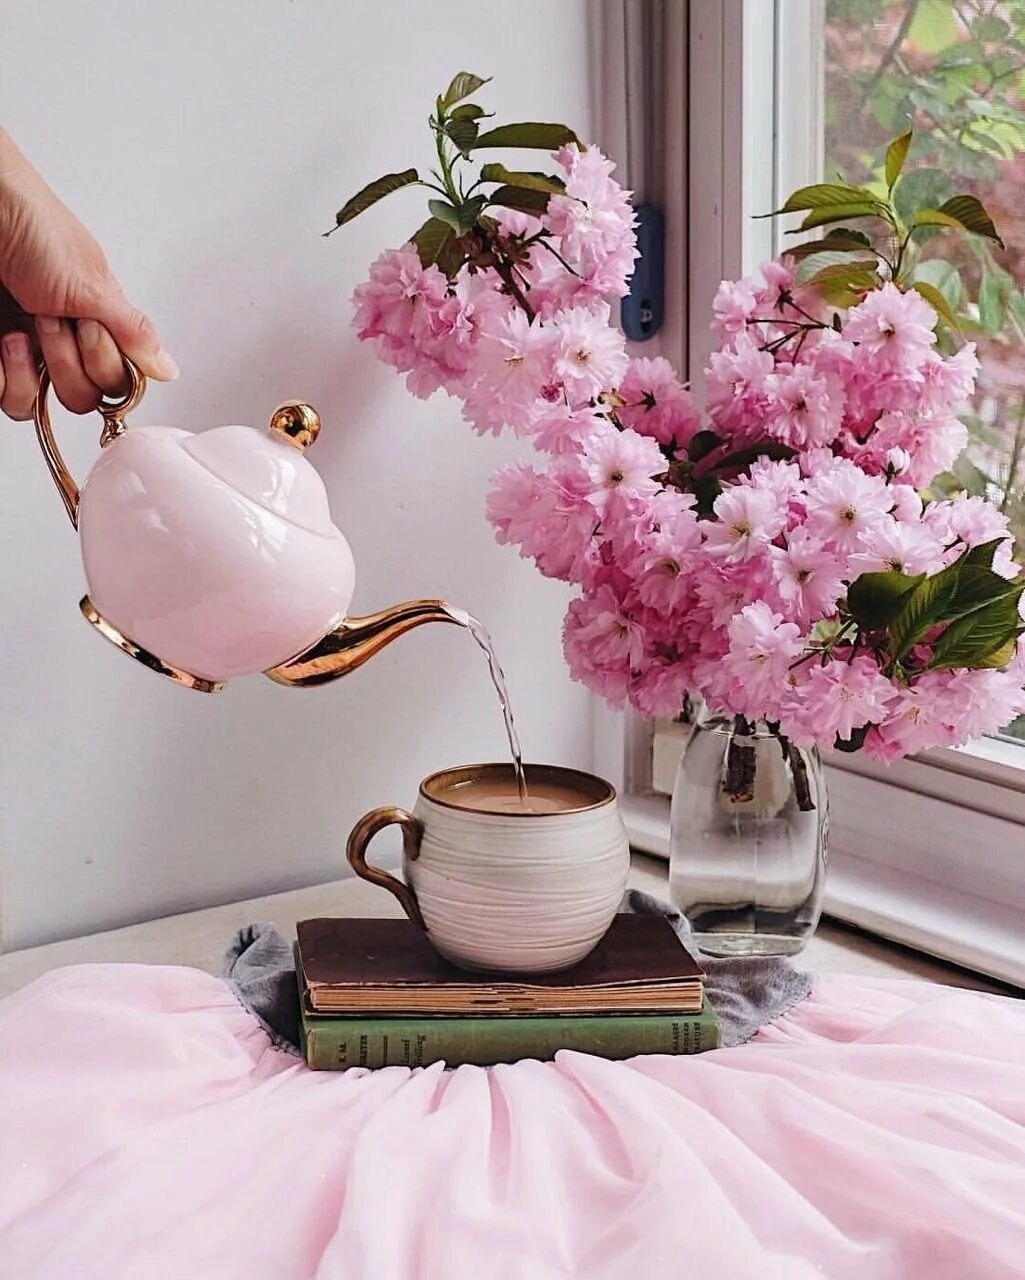 Картинка утро доброе розовое. Кофе и цветы. Утренние цветы. Доброе утро розовое. Доброе утро в розовых тонах.